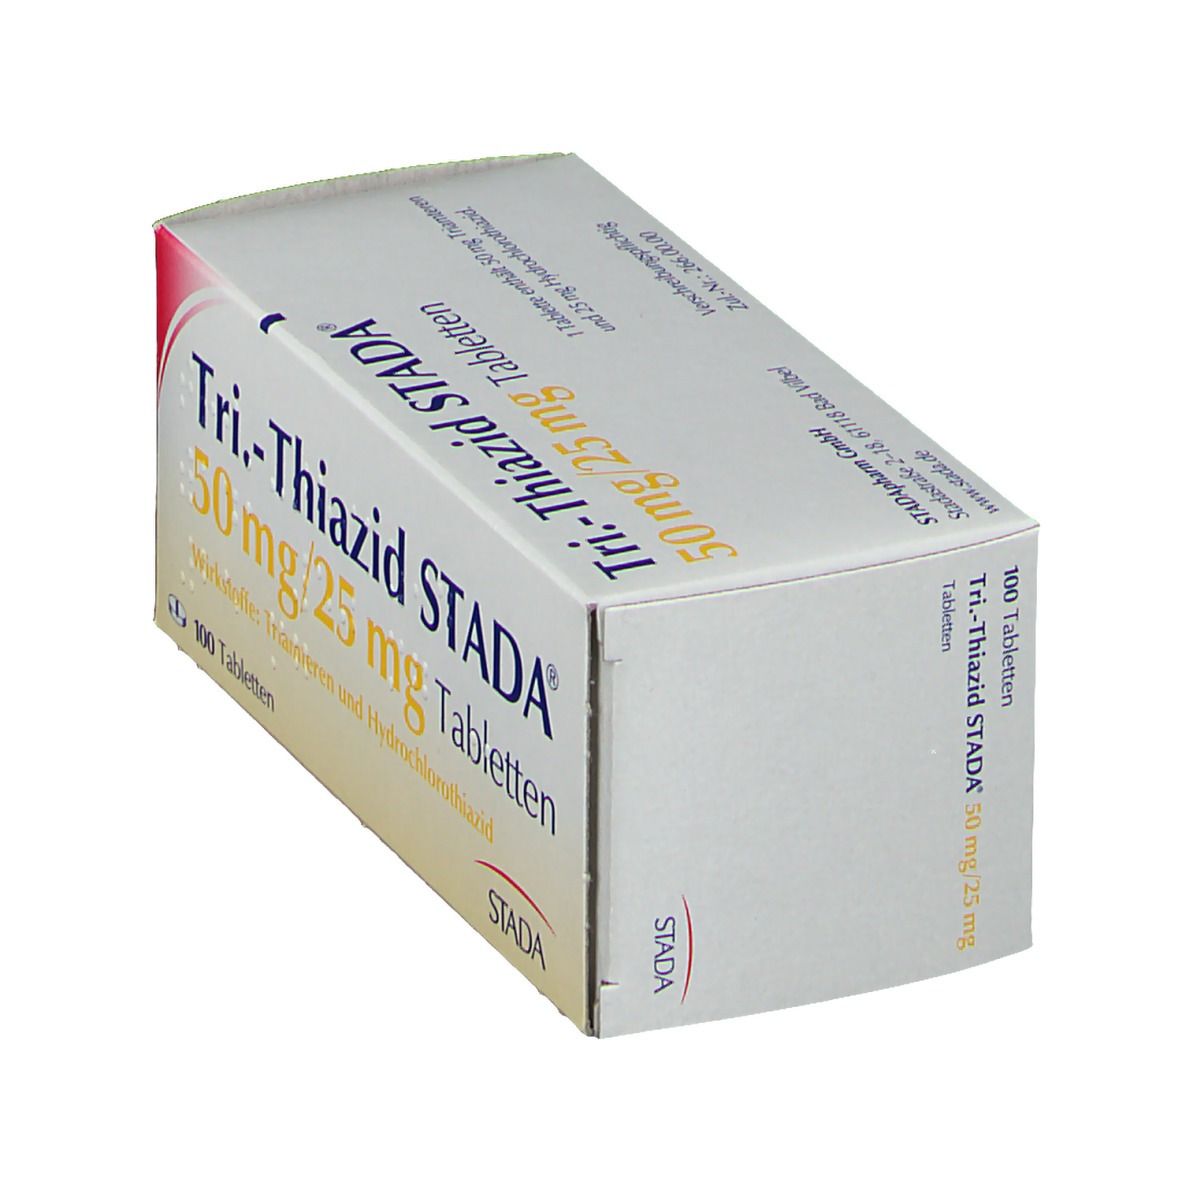 Tri.-Thiazid STADA® 50 mg/25 mg